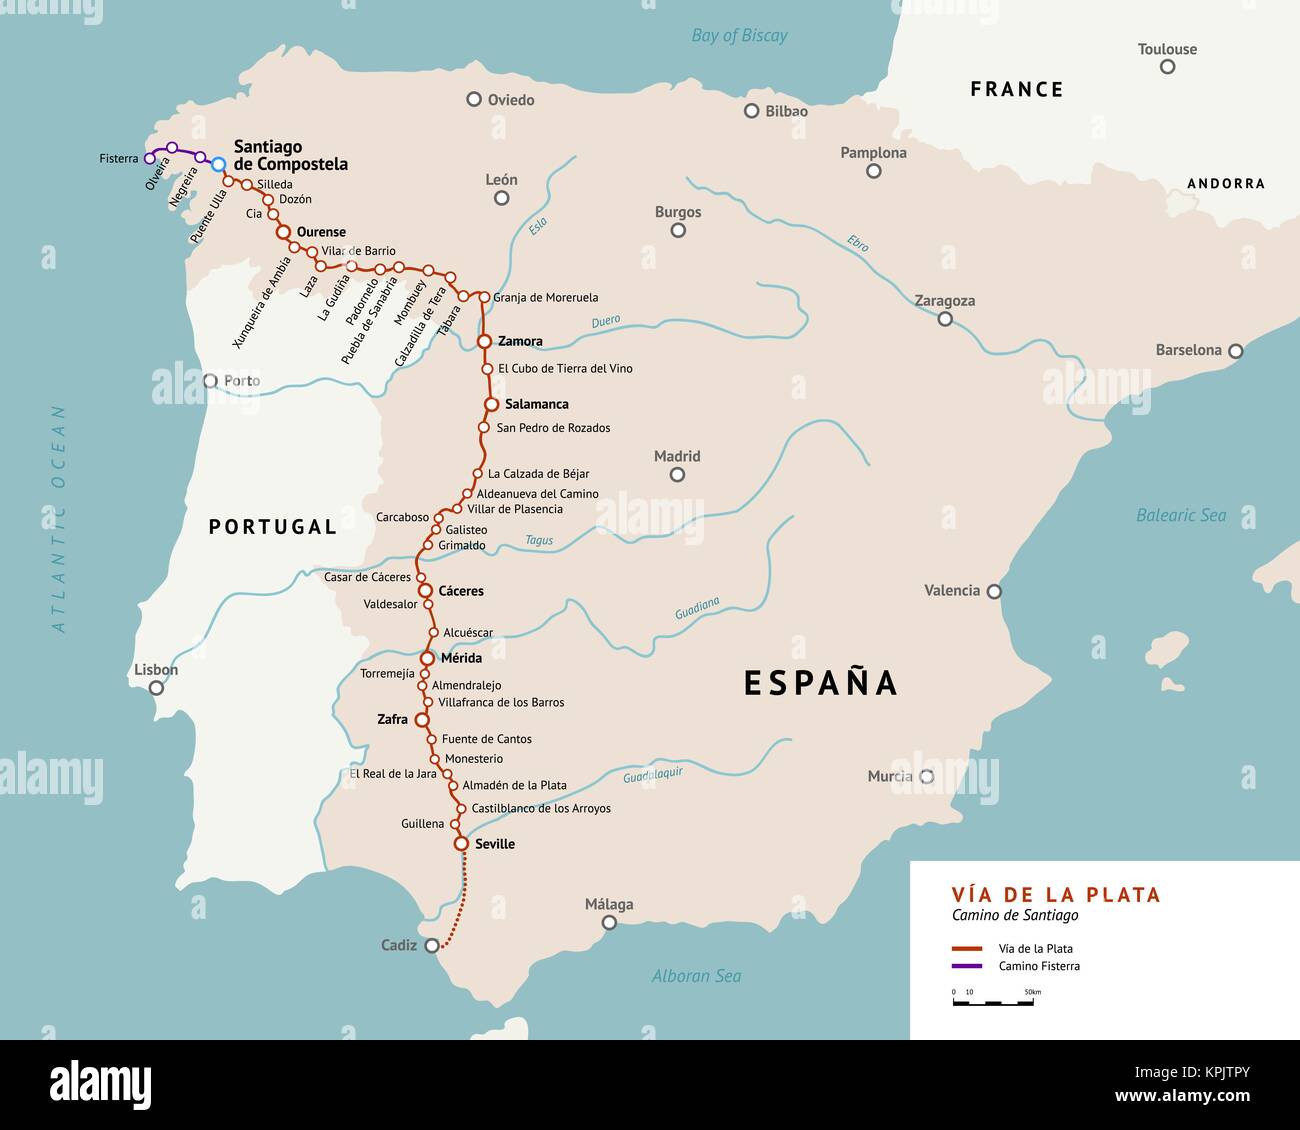 Vía de la Plata mappa. Il percorso di argento. Camino de Santiago o il modo di San Giacomo in Spagna. Antico percorso di pellegrinaggio dal sud della Spagna a Santiago Illustrazione Vettoriale